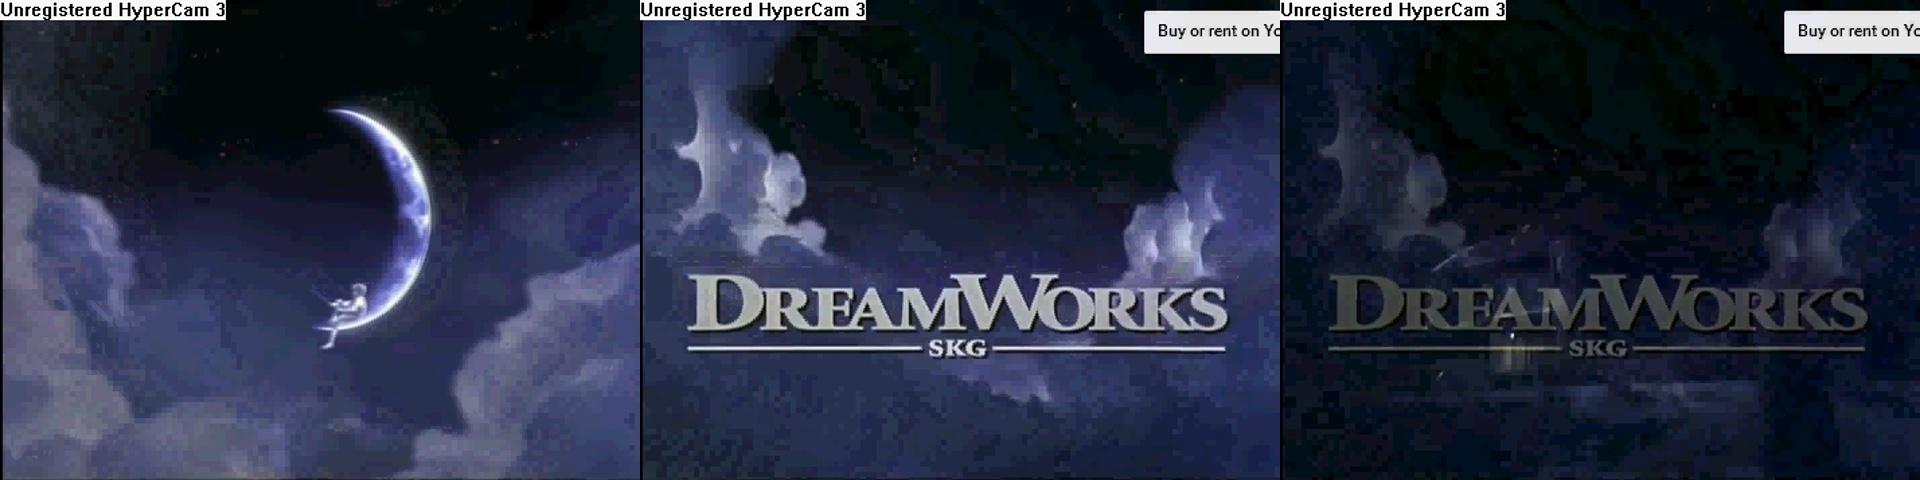 DreamWorks SKG Logo - Dreamworks skg logo rare trailer. Logopedia